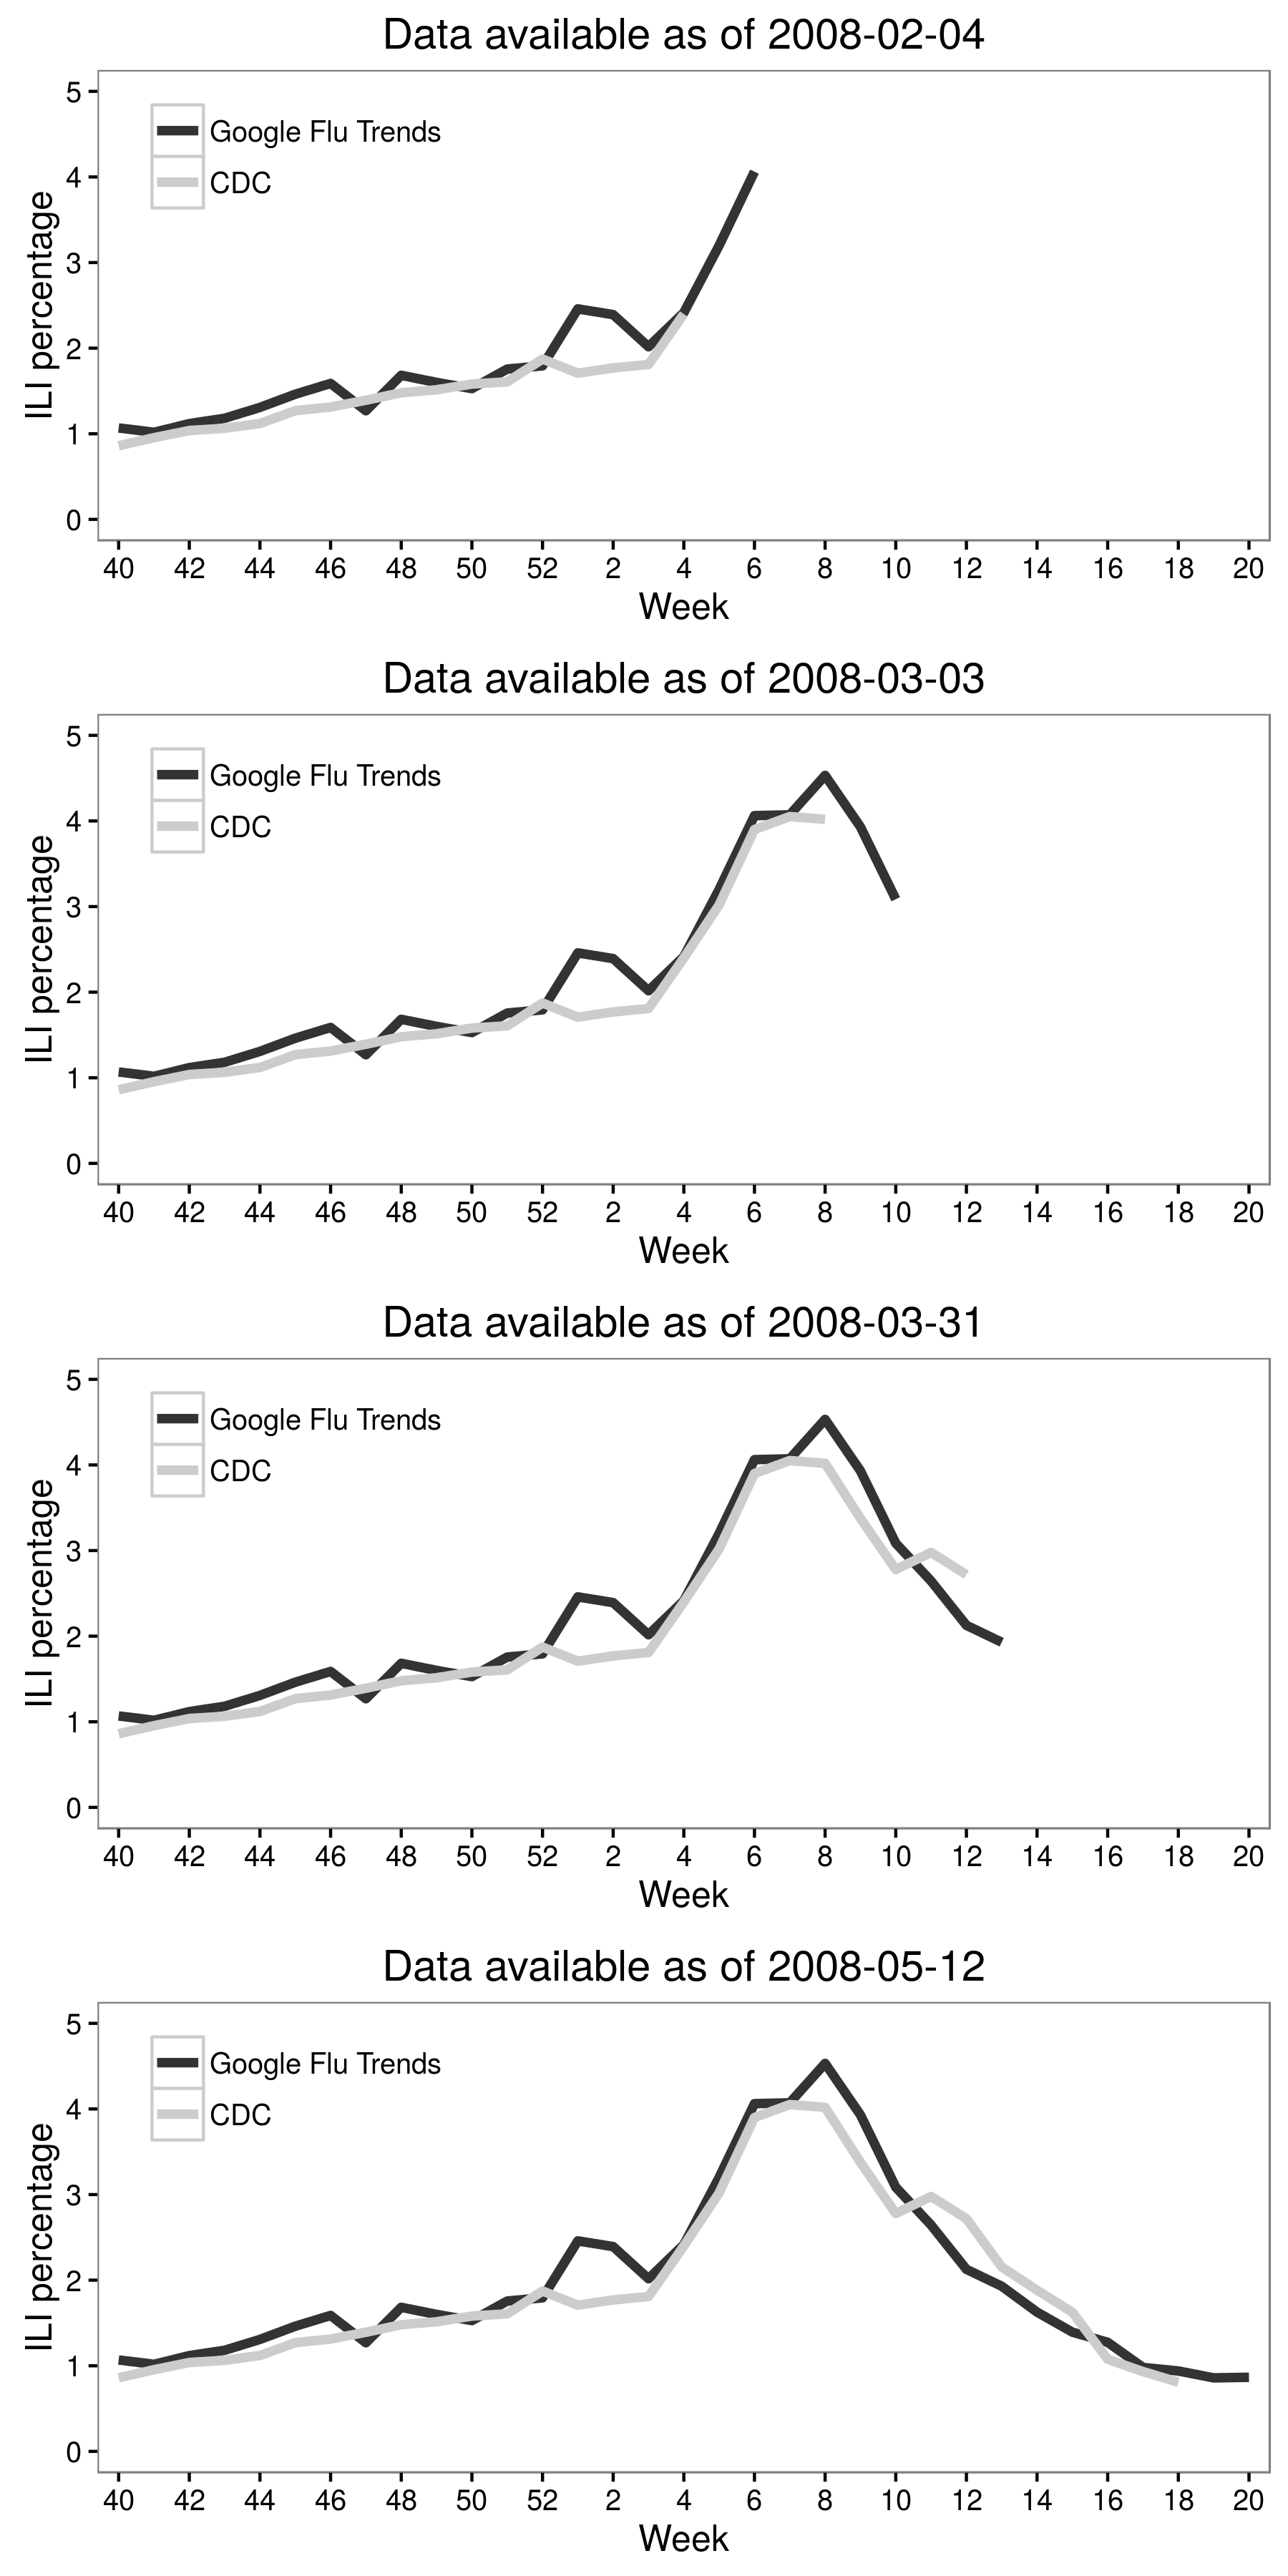 ຮູບພາບ 2.6: Jeremy Ginsberg ແລະເພື່ອນຮ່ວມງານ (2009) ລວມຂໍ້ມູນການຄົ້ນຫາຂອງກູໂກທີ່ມີຂໍ້ມູນ CDC ເພື່ອສ້າງ Google Flu Trends, ເຊິ່ງສາມາດຫລຸດອັດຕາການຕິດເຊື້ອທີ່ຄ້າຍຄືໄຂ້ຫວັດໃຫຍ່ (ILI). ຜົນໄດ້ຮັບໃນຮູບນີ້ແມ່ນສໍາລັບເຂດພາກກາງ Atlantic ຂອງສະຫະລັດອາເມລິກາໃນປີ 2007-2008. ເຖິງຢ່າງໃດກໍ່ຕາມ, ໃນເບື້ອງຕົ້ນແມ່ນມີຄວາມຫວັງດີຫຼາຍ, ການປະຕິບັດຂອງແນວໂນ້ມຂອງພະຍາດໄຂ້ຫວັດສັດປີກ Google ໃນເວລາທໍາລາຍ (Cook et al., 2011 Olson et al., 2013 Lazer et al., 2014). ດັດແປງຈາກ Ginsberg et al. (2009), ຮູບທີ່ 3.